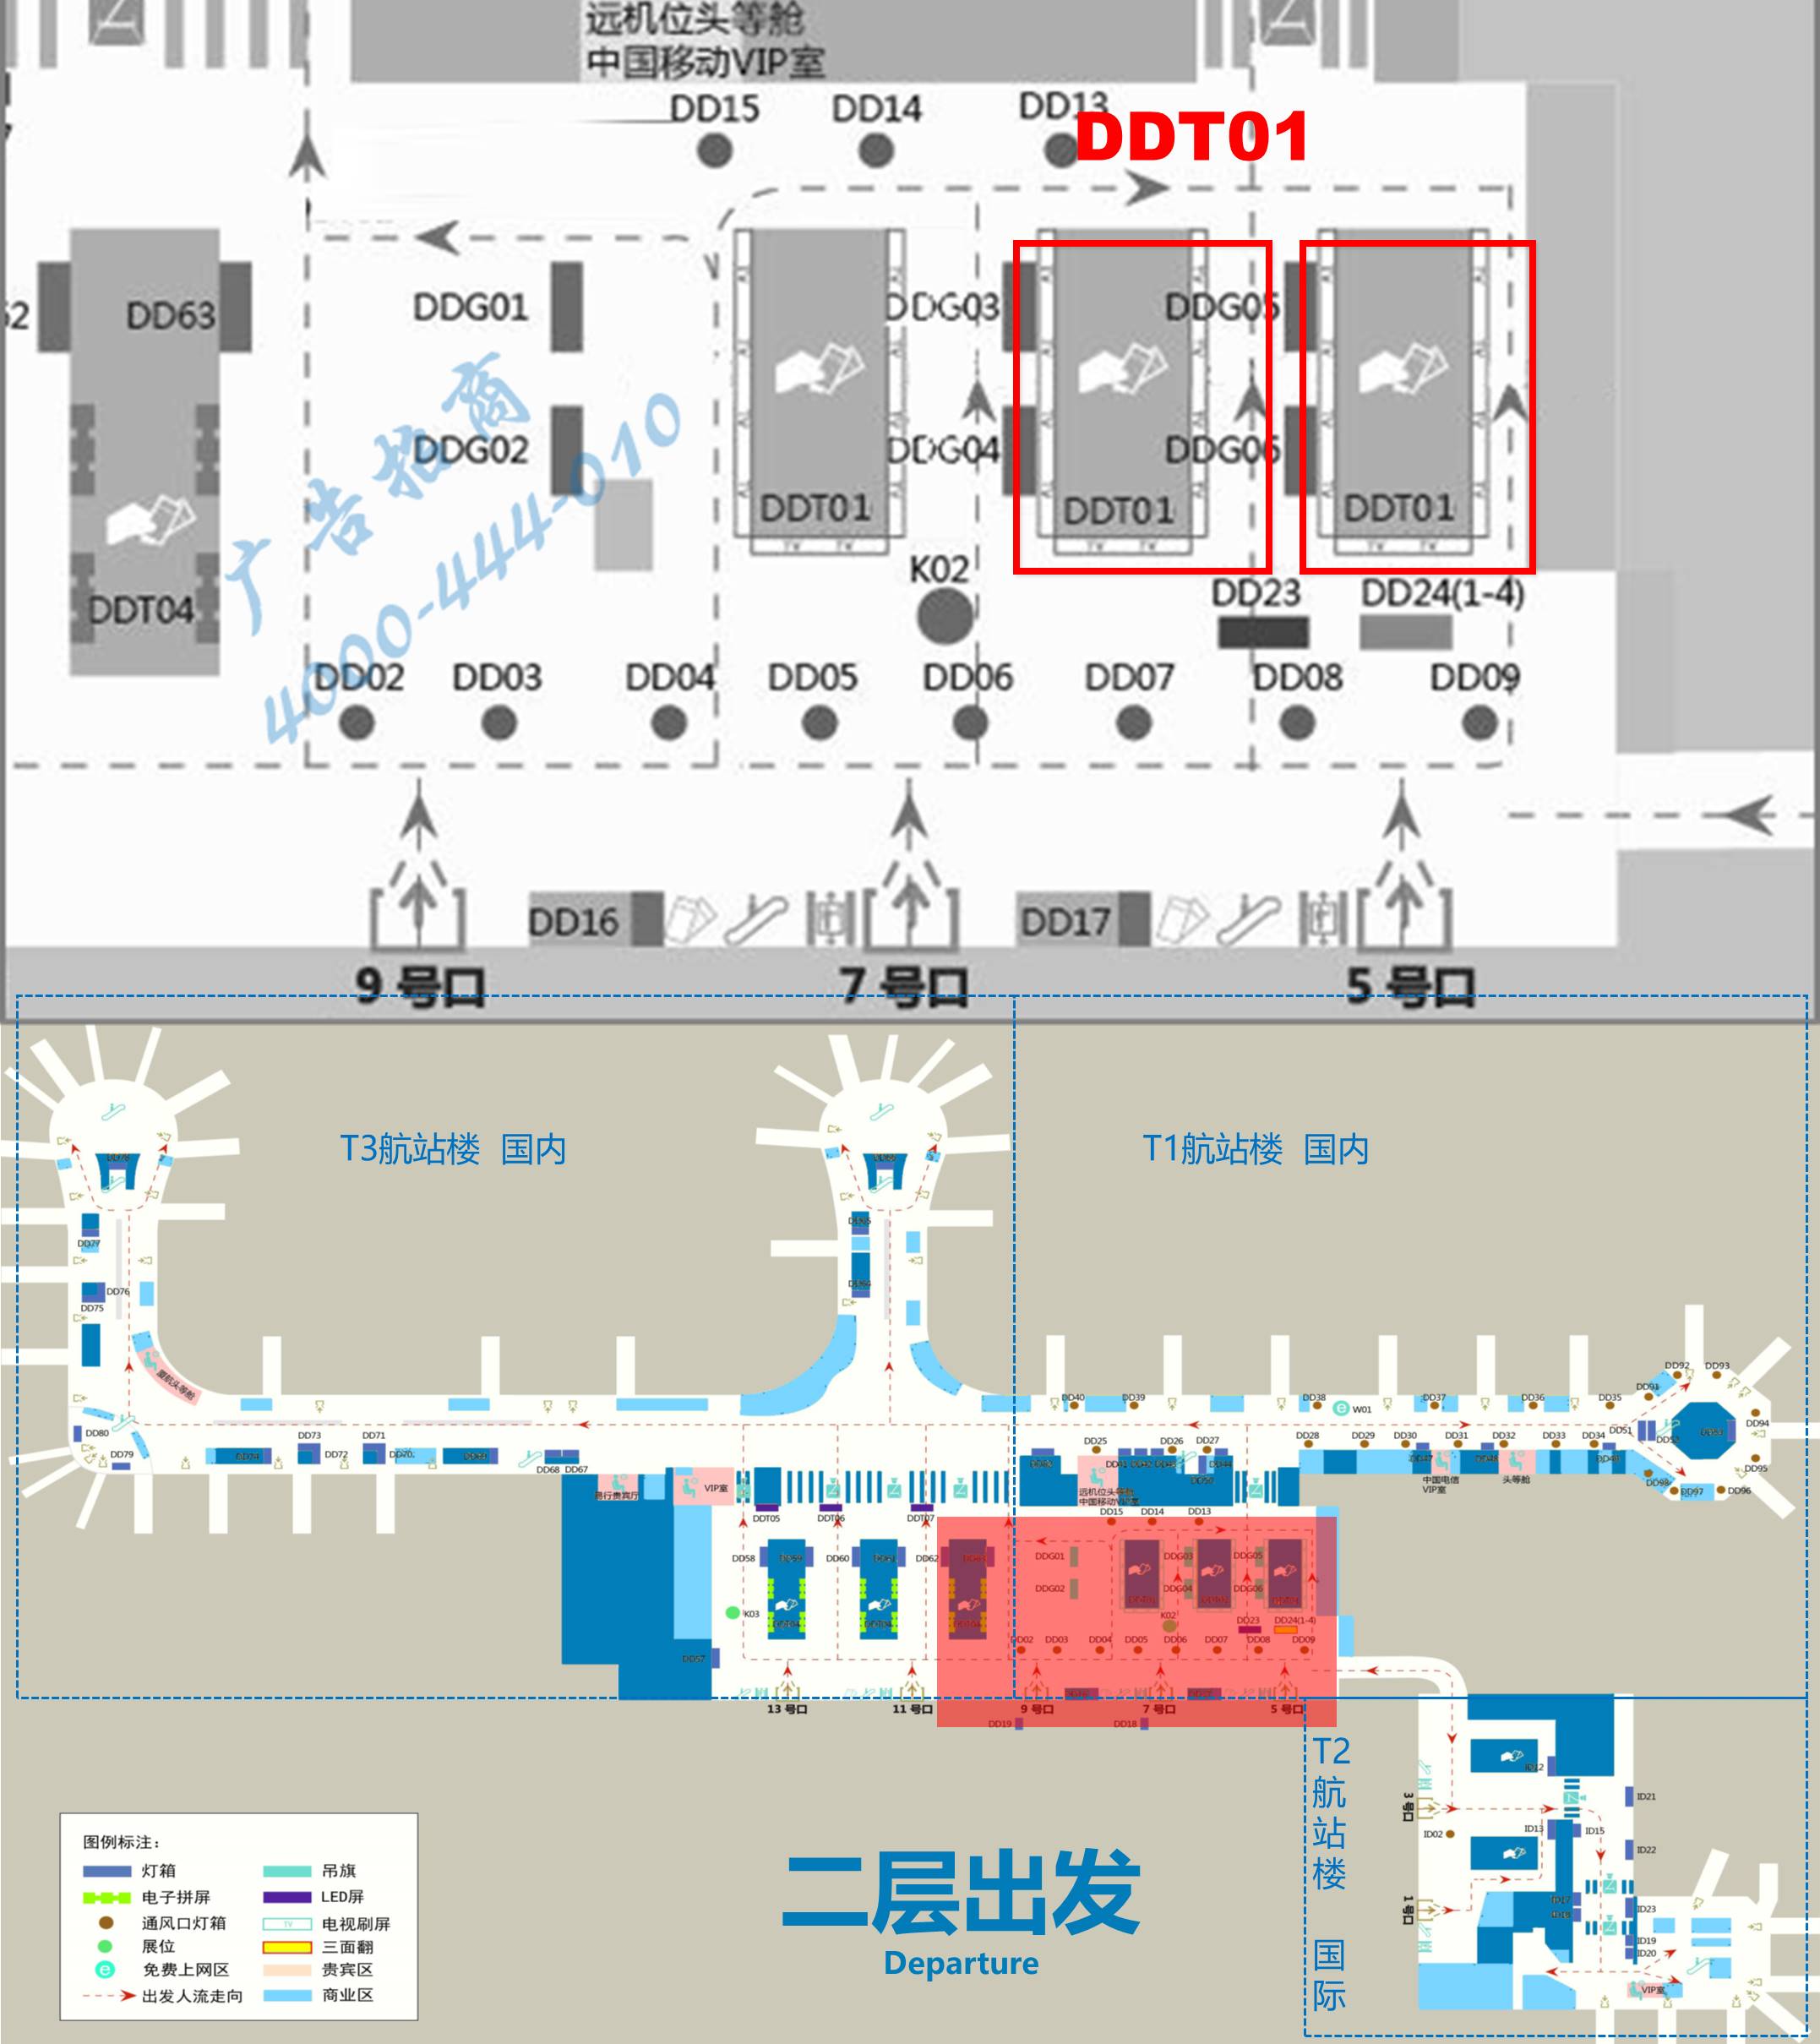 杭州萧山机场广告-T1办票岛上方显示屏DDT01位置图